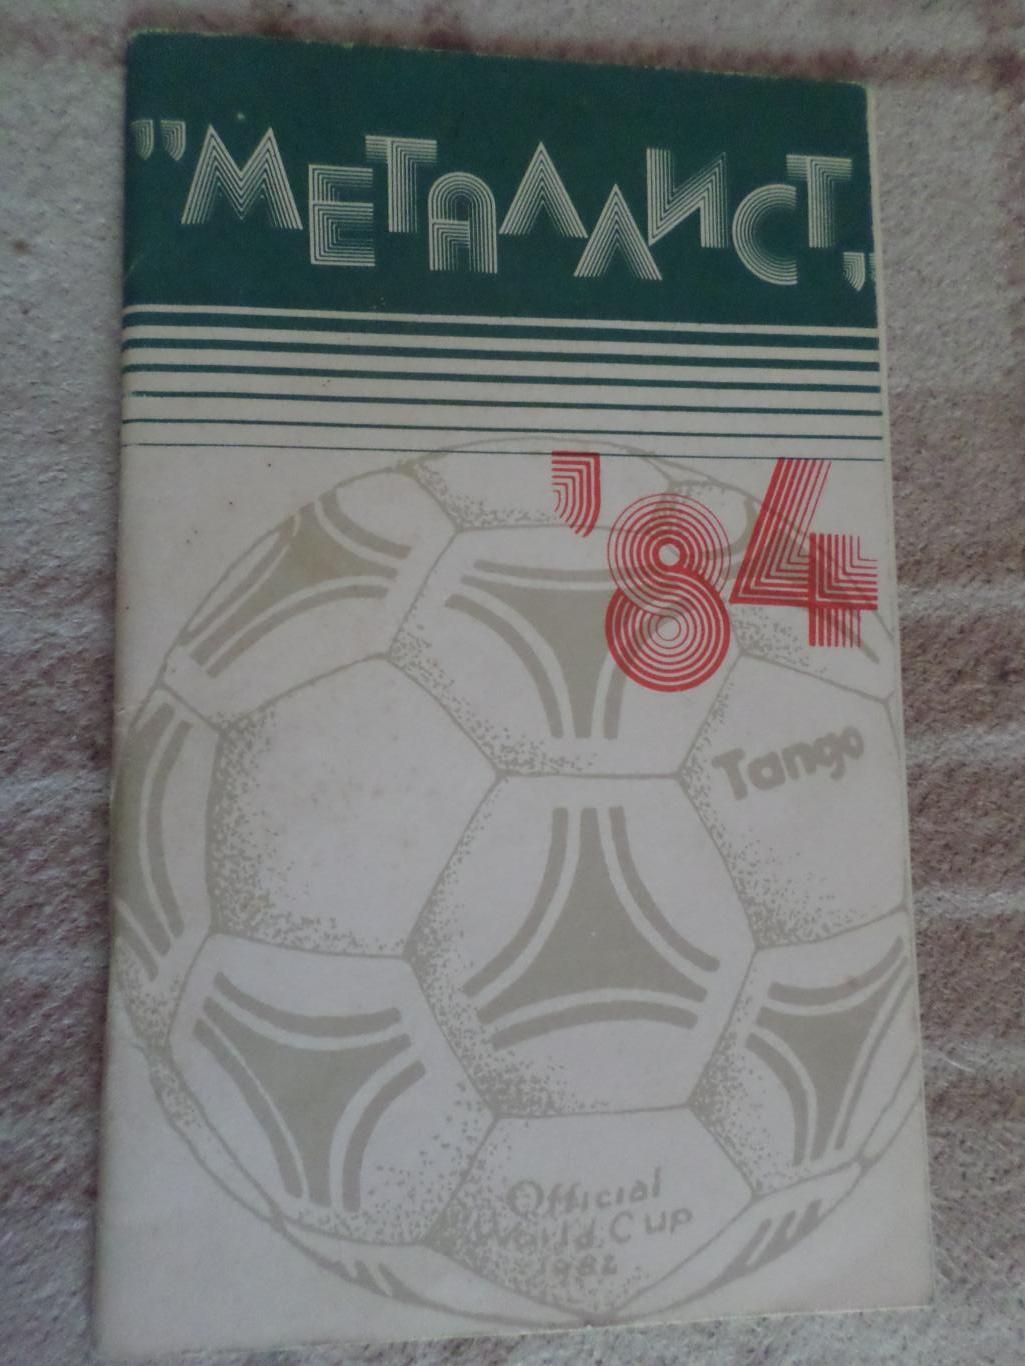 справочник Футбол 1984 г, г. Харьков